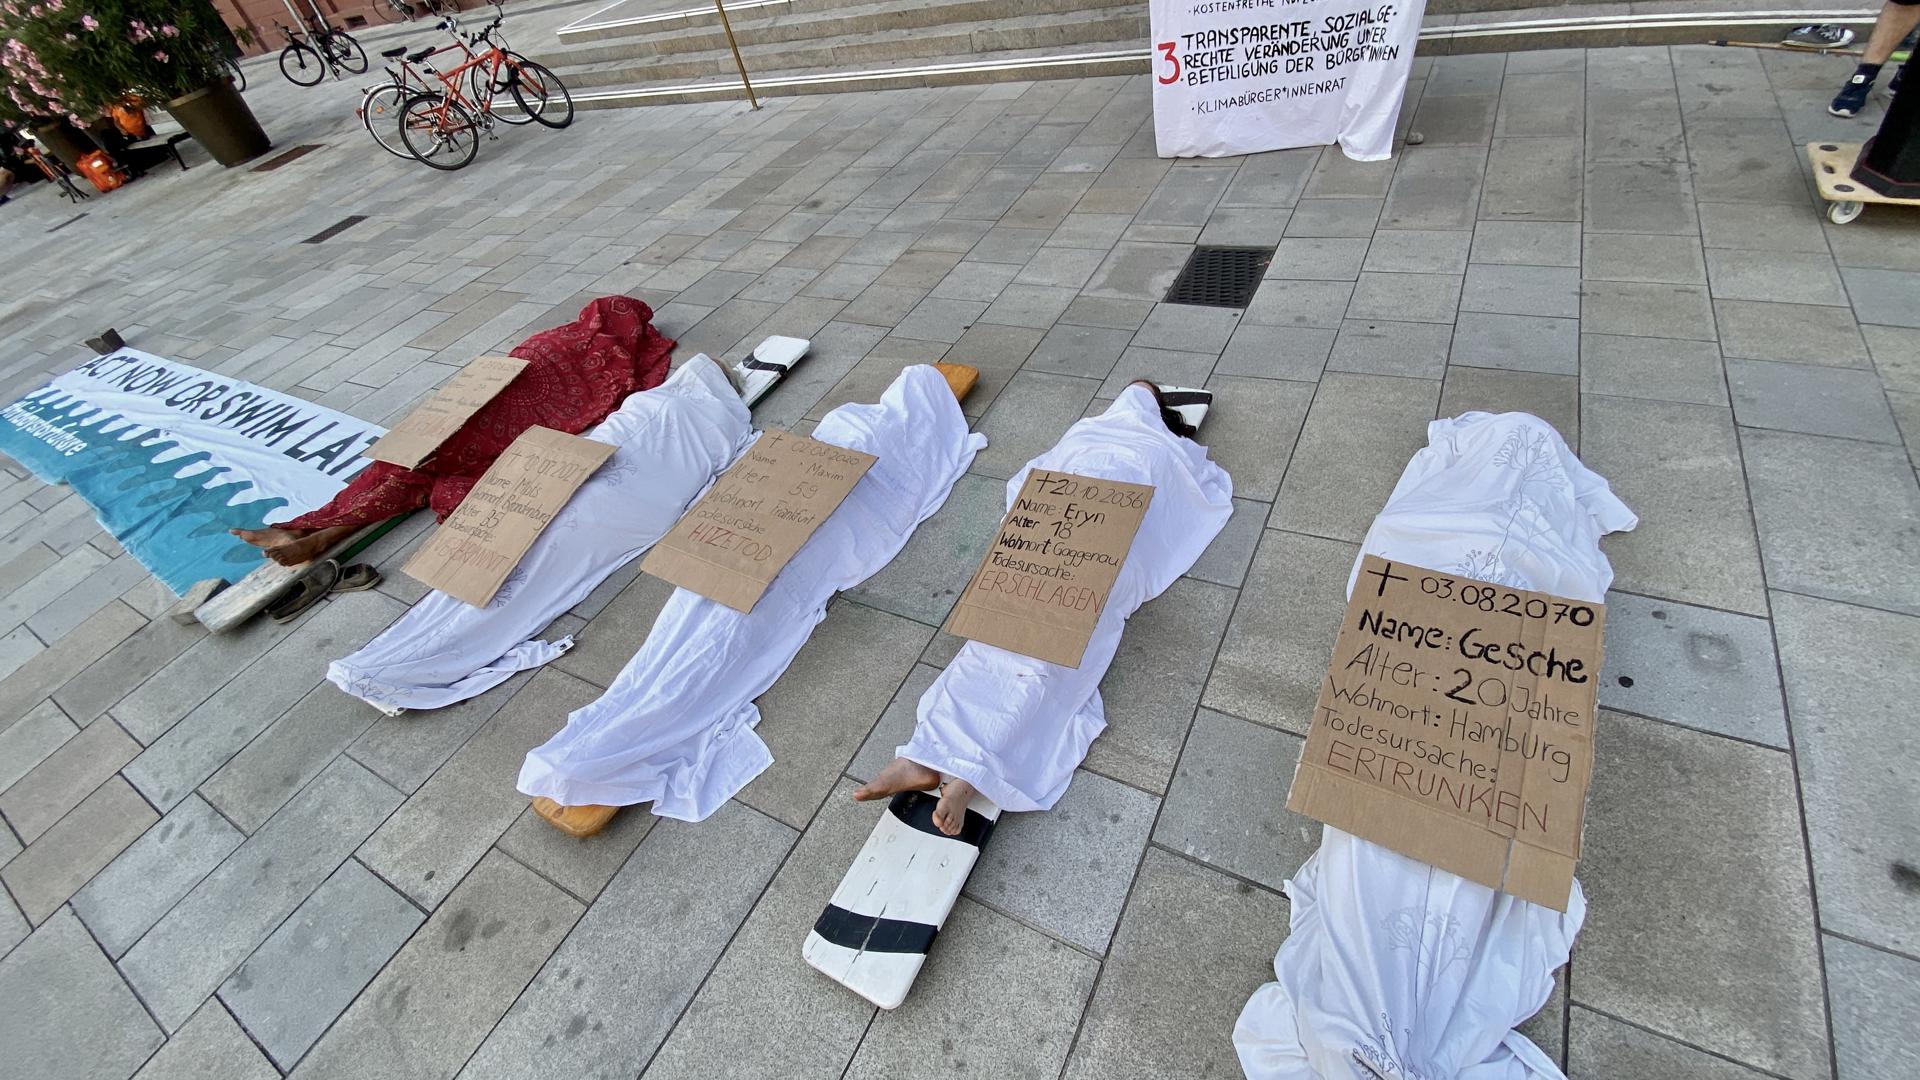 „Hitzetod“, „Ertrunken“: Mit einem „Die-in“ haben Karlsruher Klimaaktivisten vor dem Rathaus auf die drastischen Folgen des Klimawandels aufmerksam gemacht. 